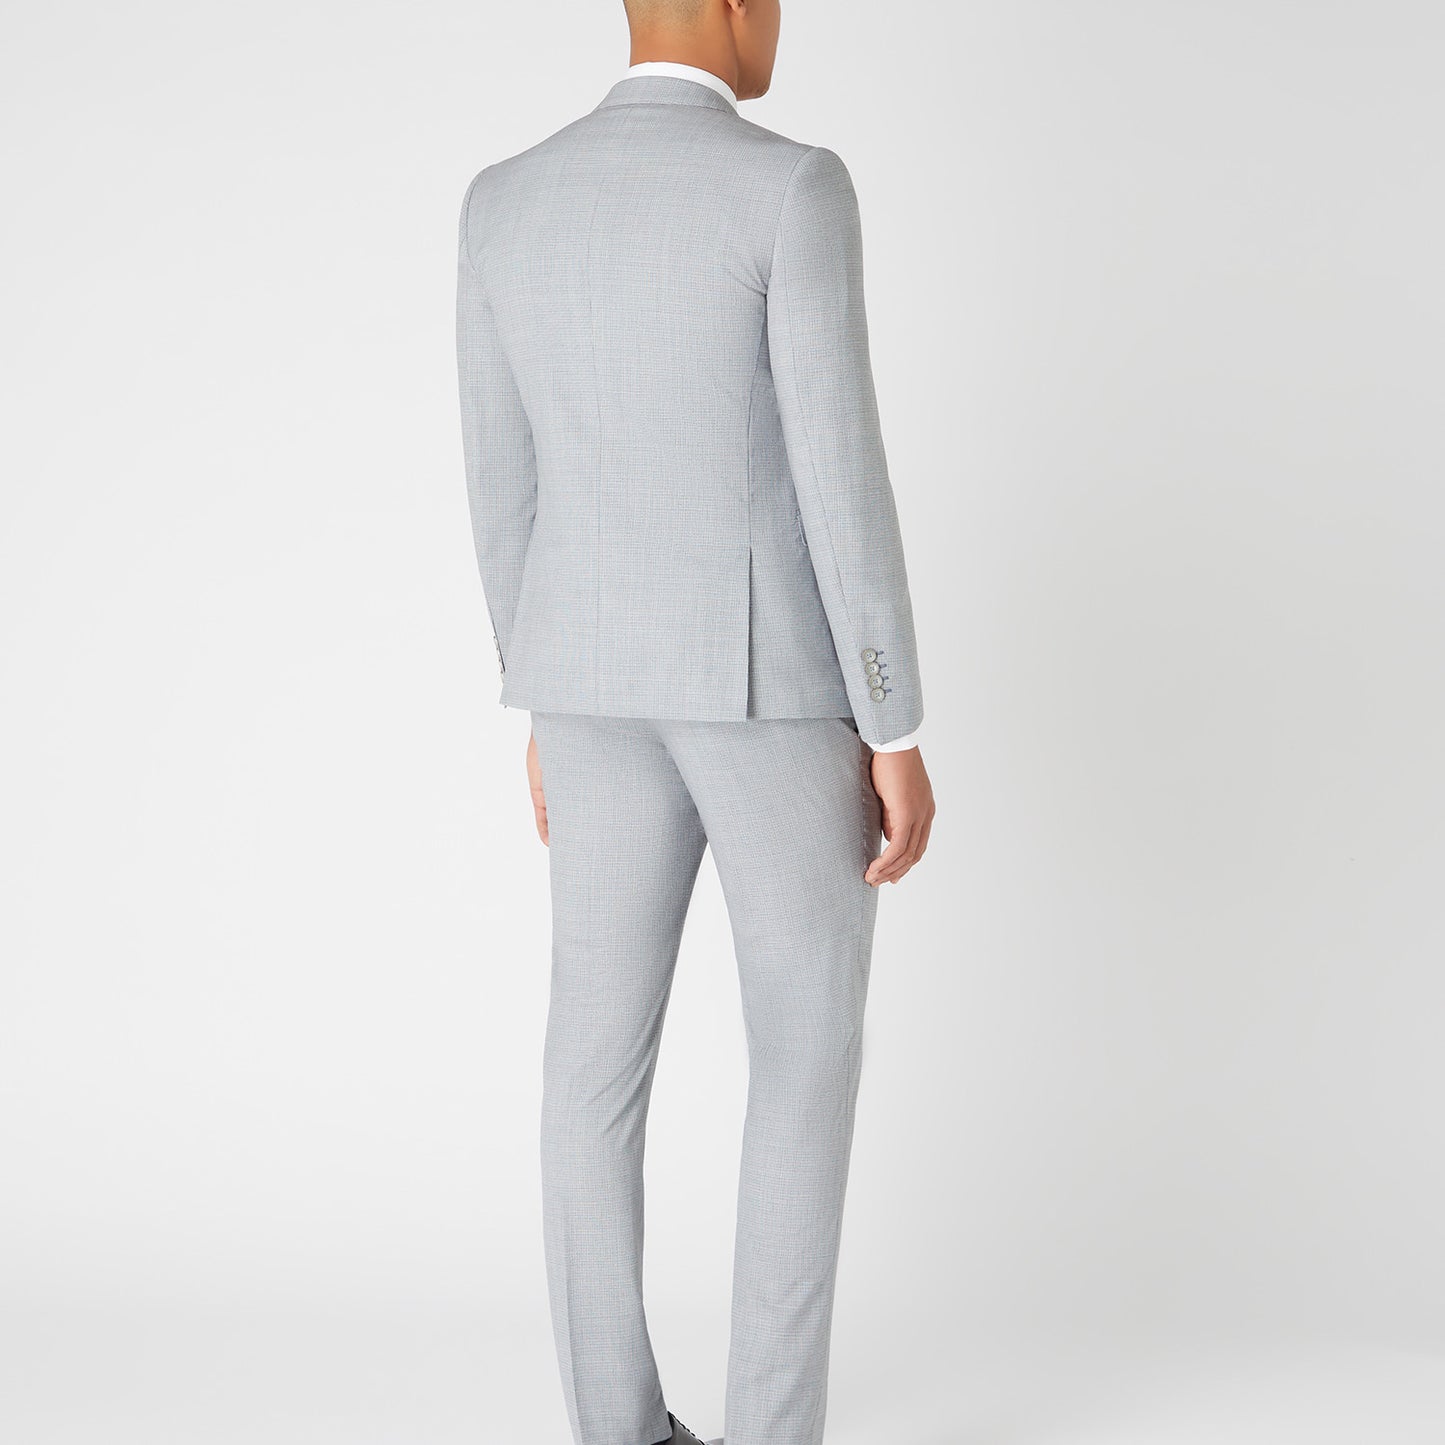 Remus Uomo 42038 03 Light Grey Slim Suit Jacket